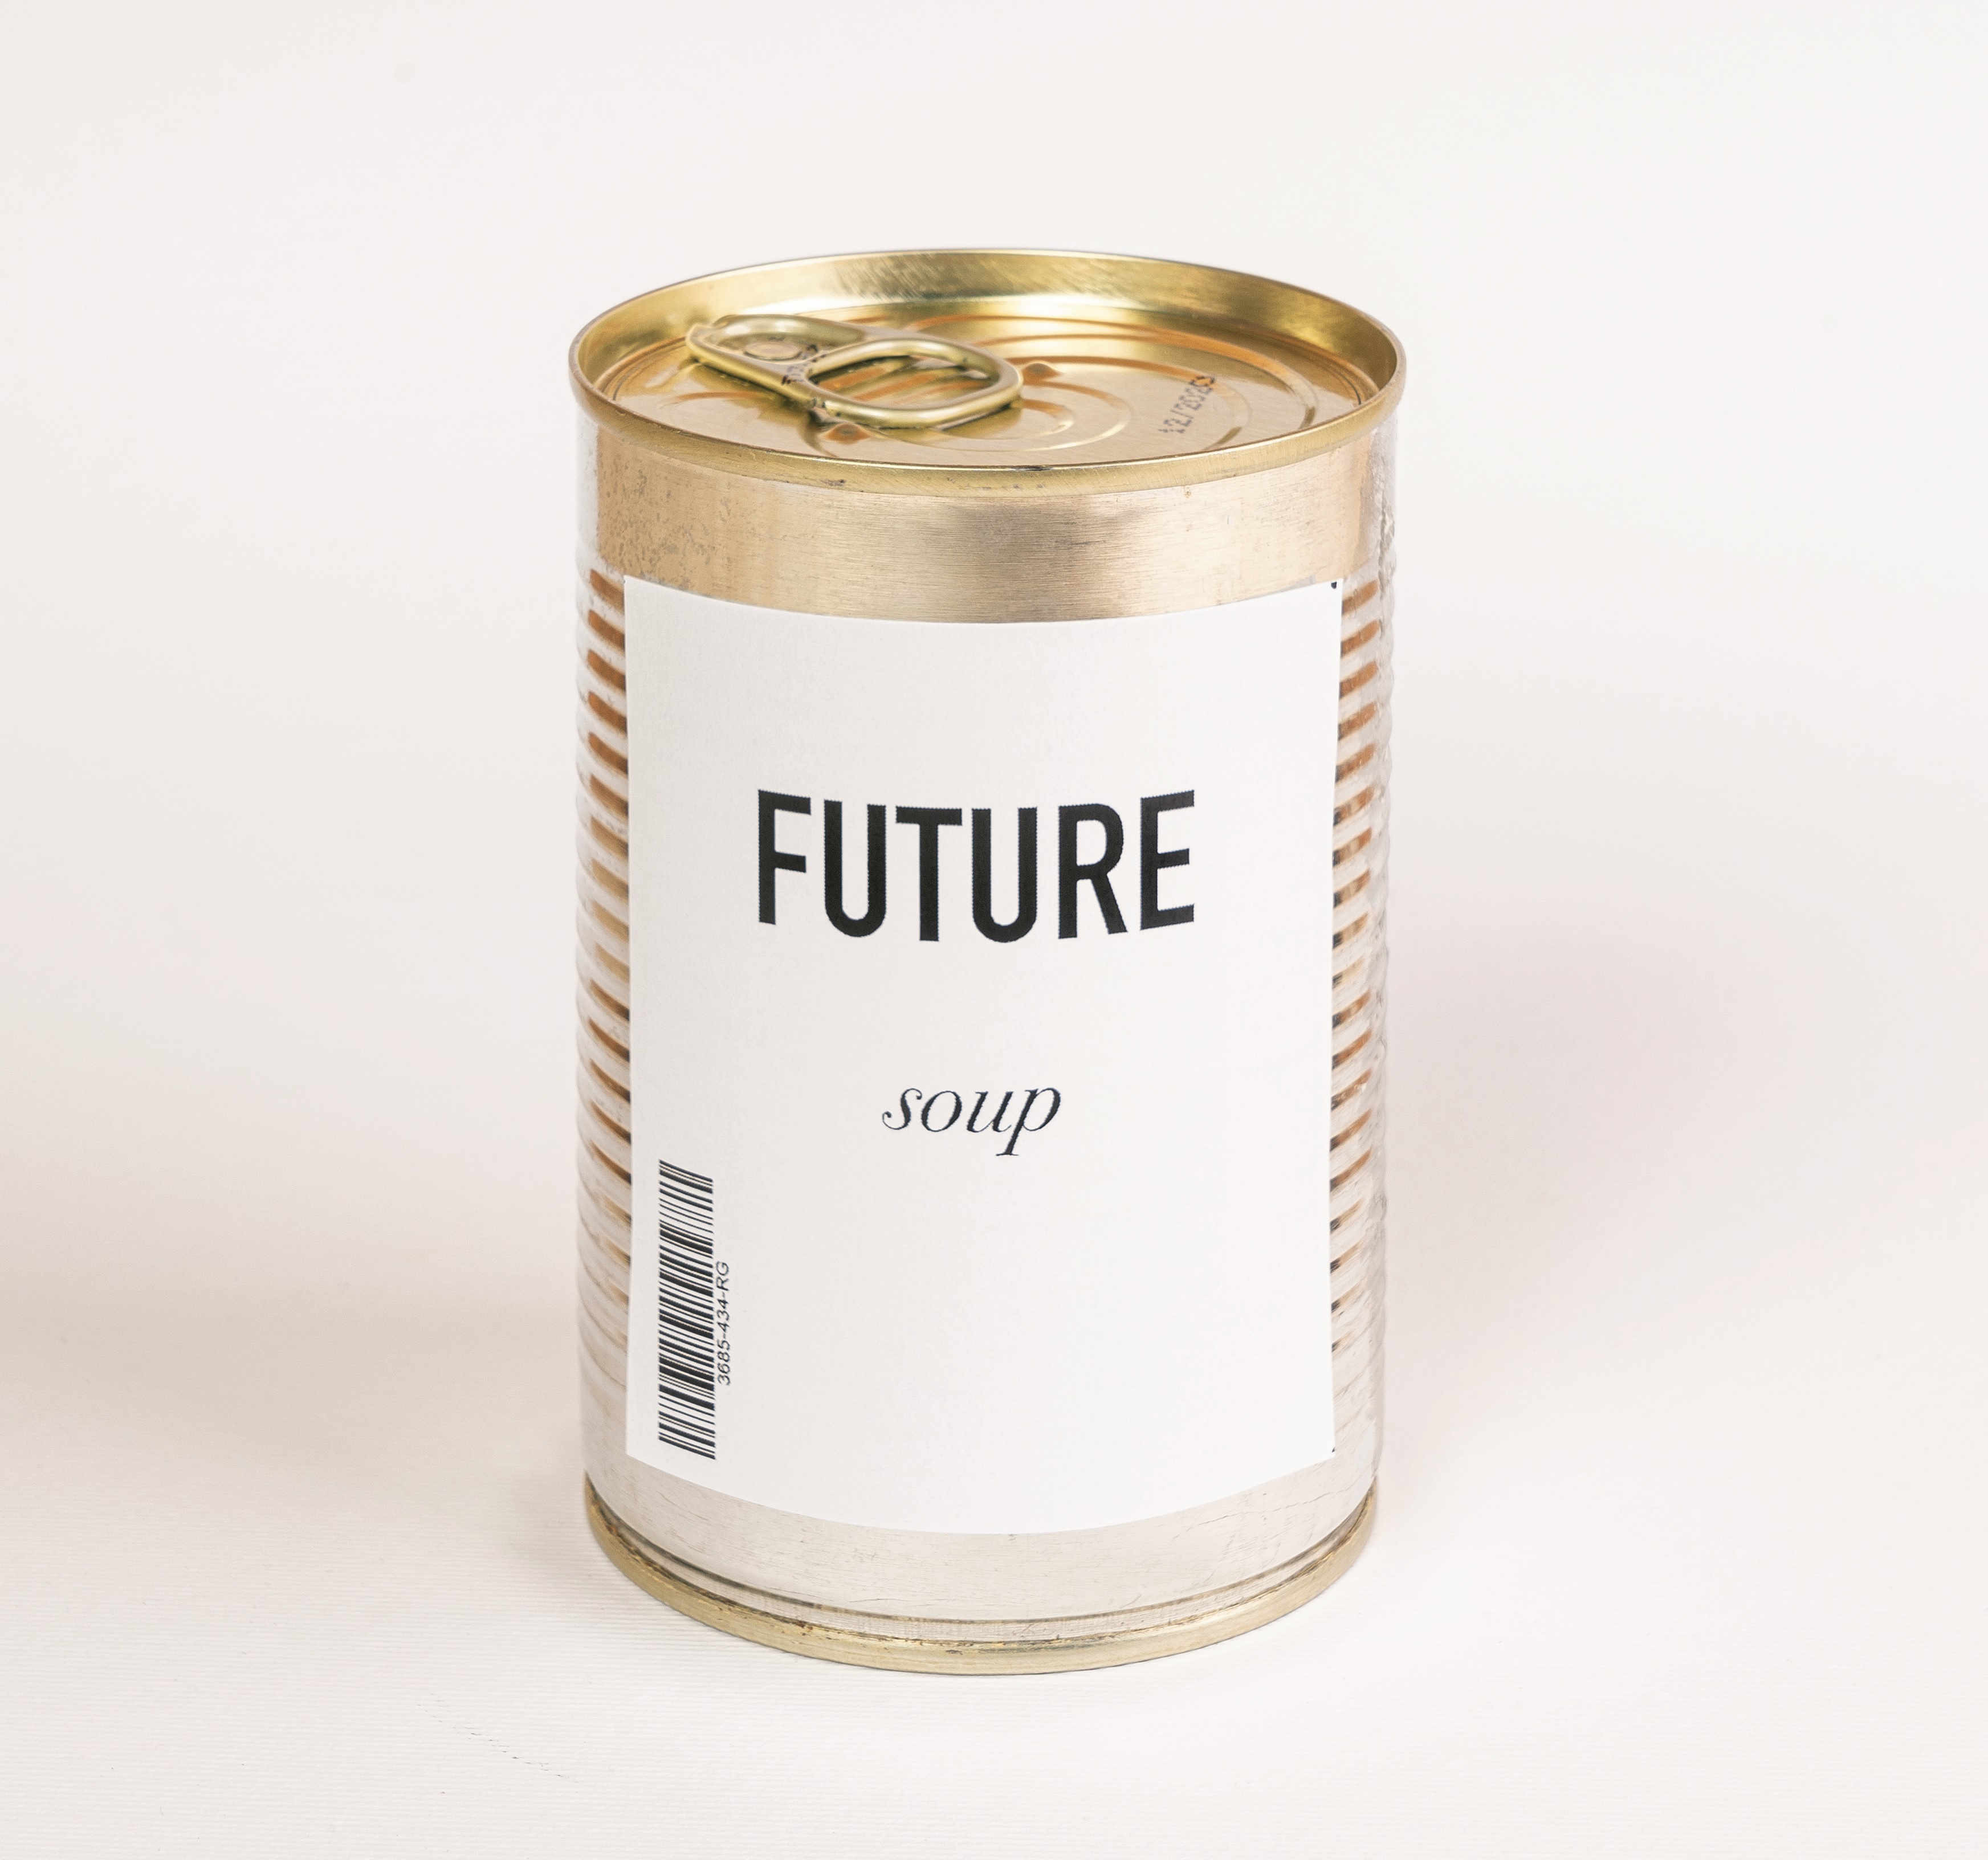 Future Soup